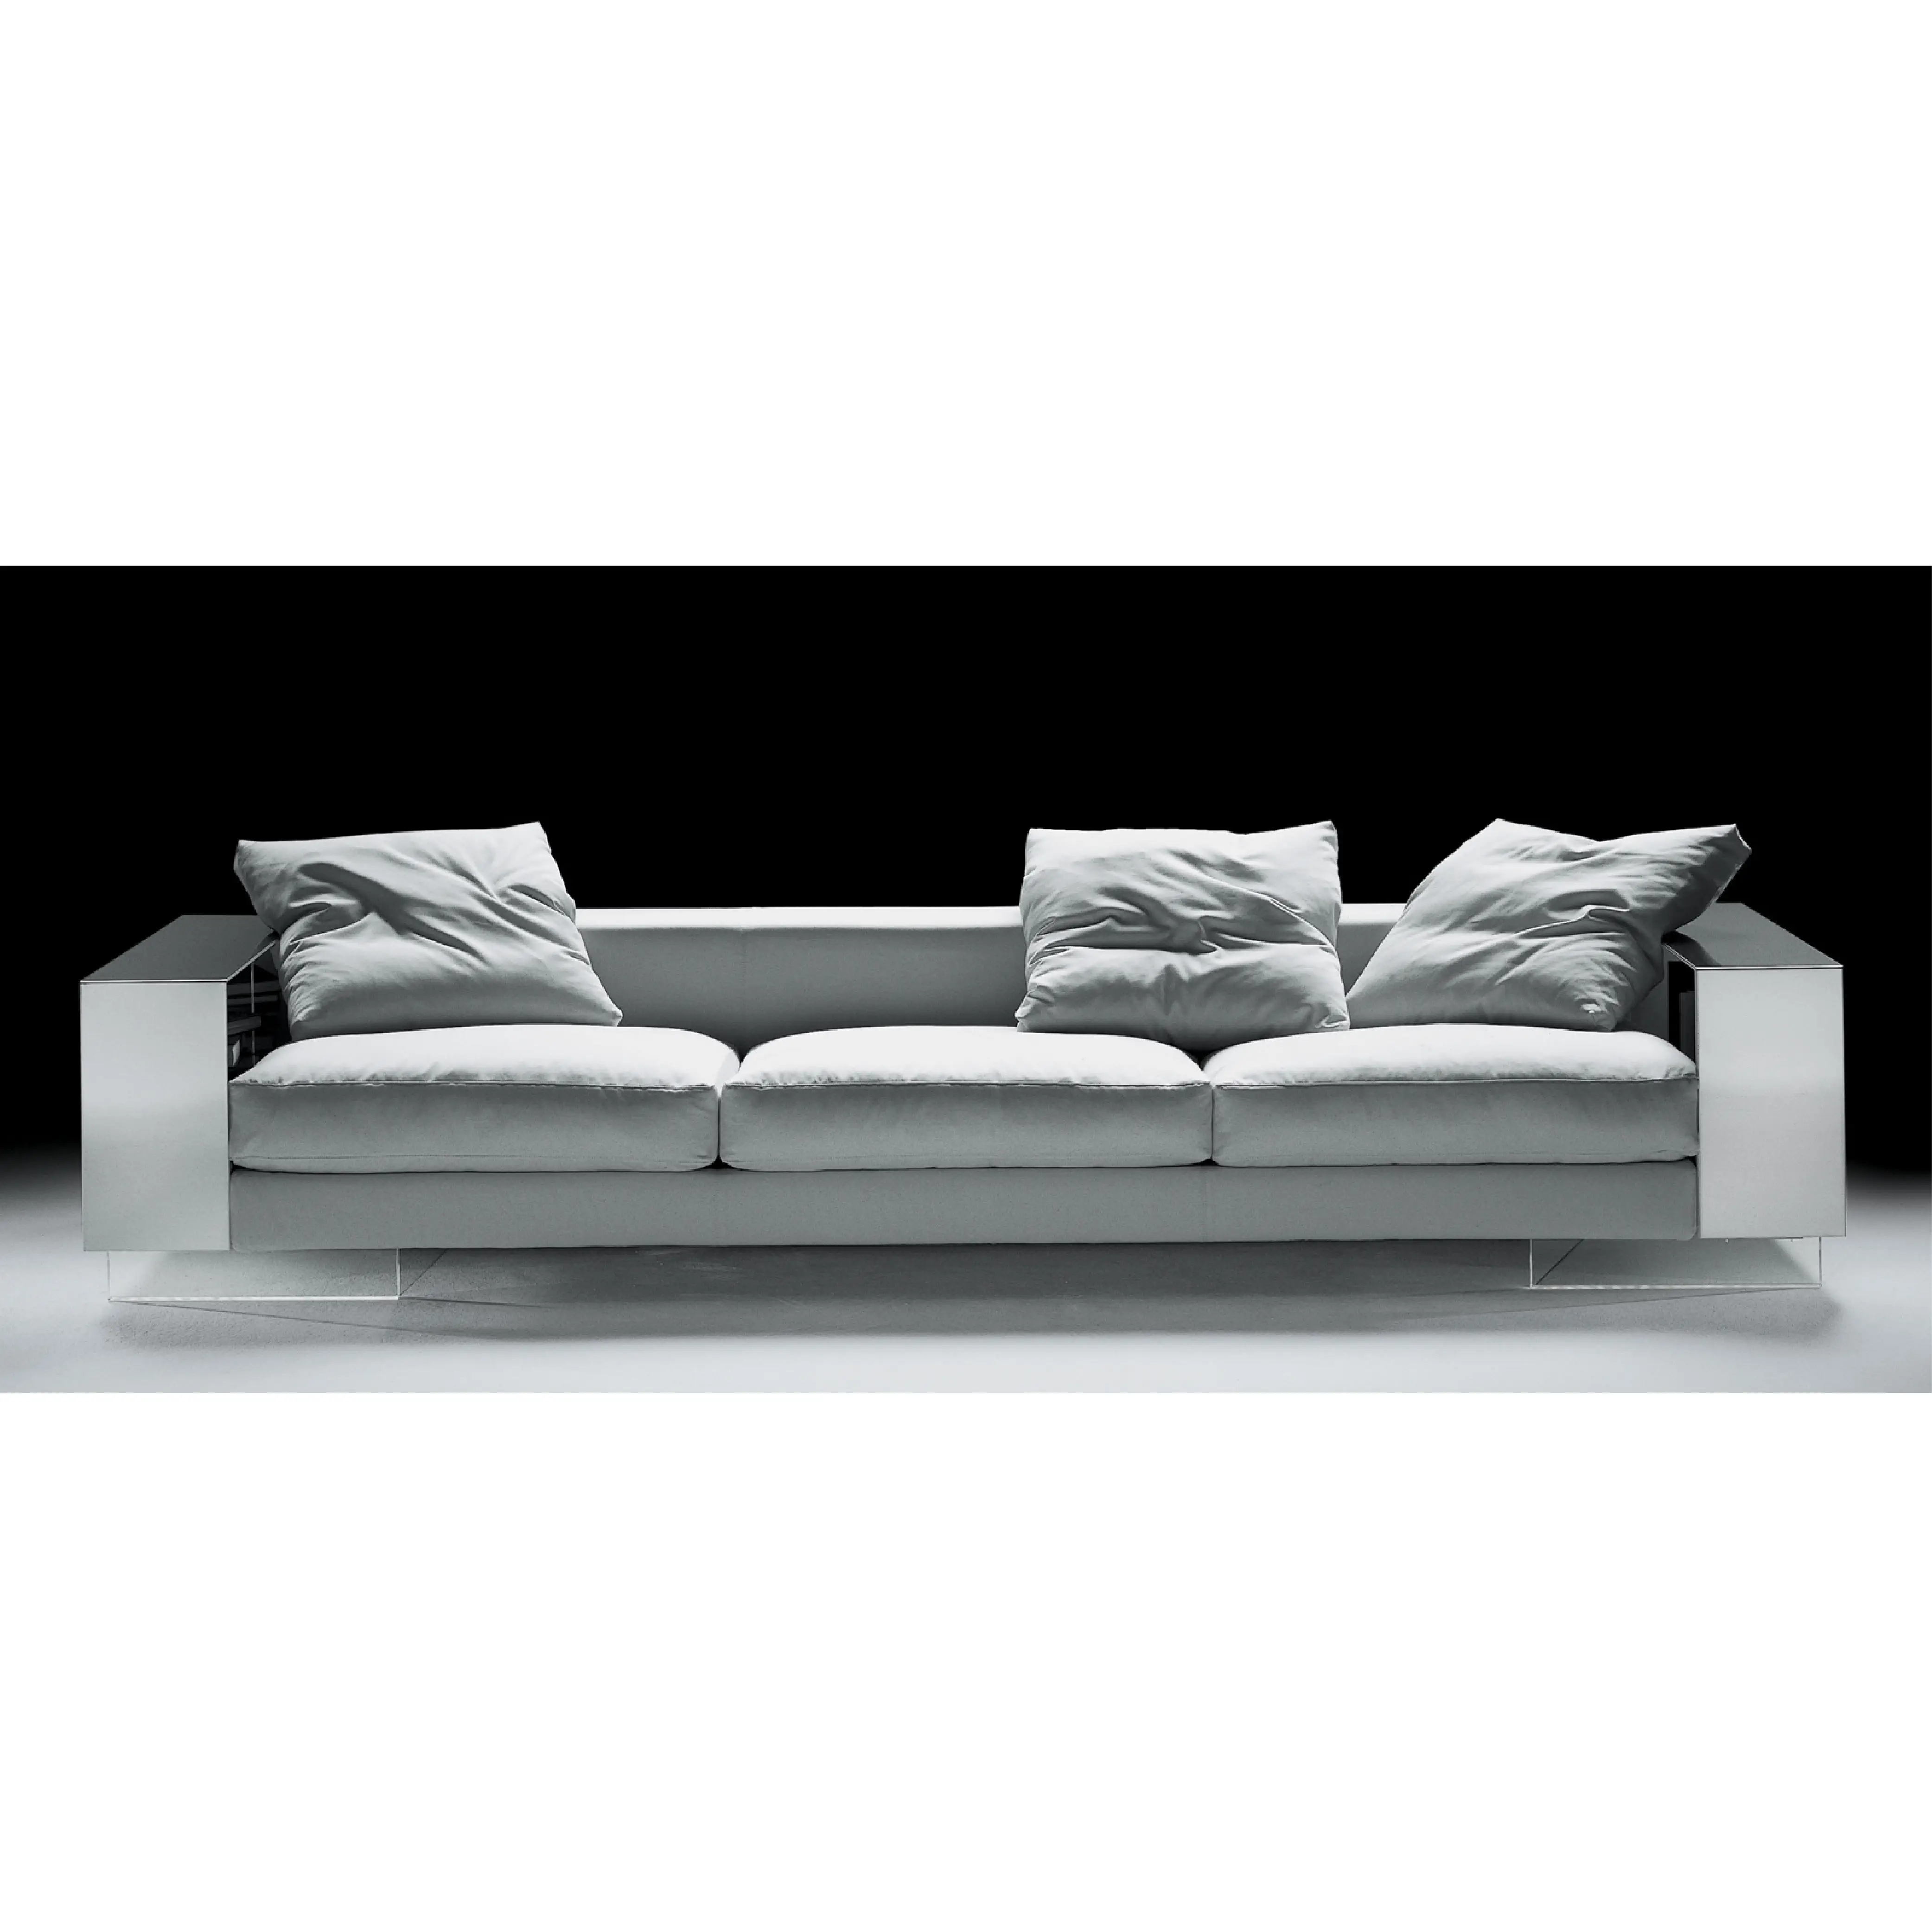 Sofa Kain Putih Kustom Kursi 3 Besar Nyaman Modern Mewah